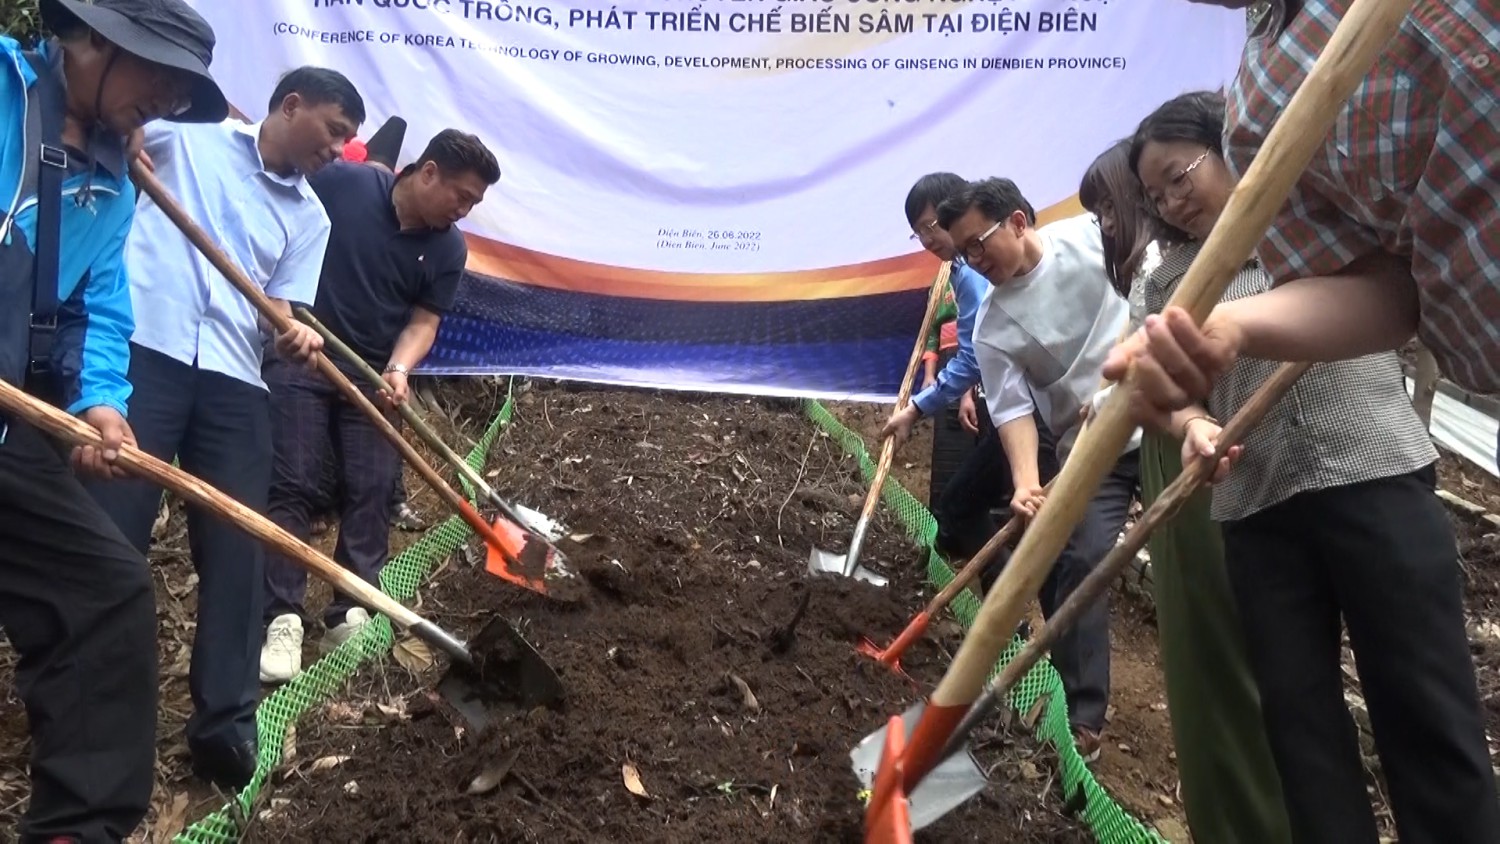 Lễ ký kết chuyển giao công nghệ kỹ thuật trồng cây sâm tại xã Tênh Phông